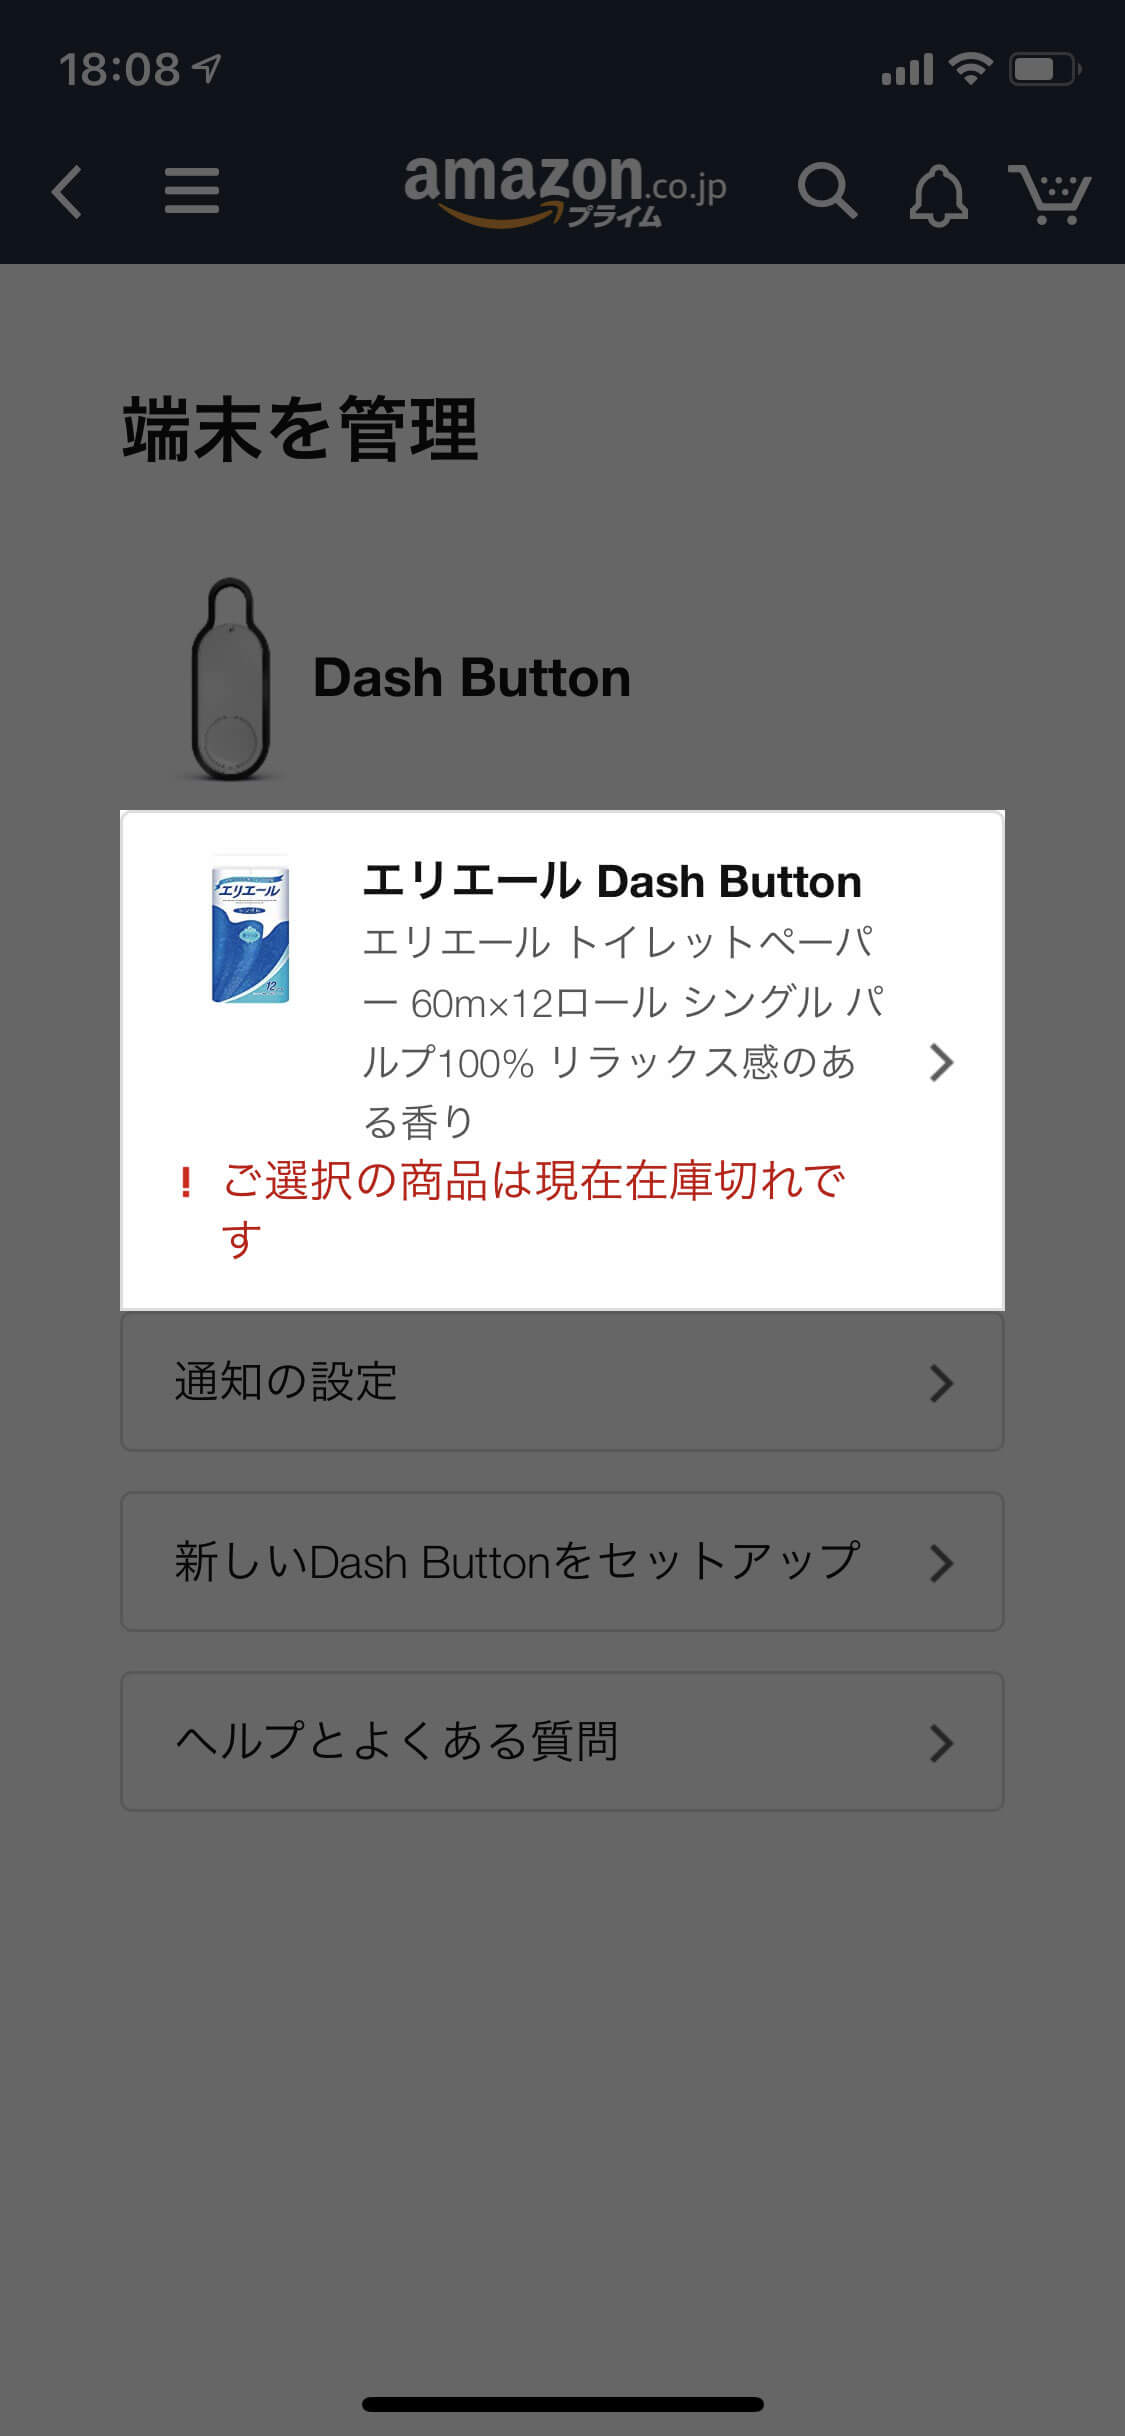 Amazon Dash Button 無効化